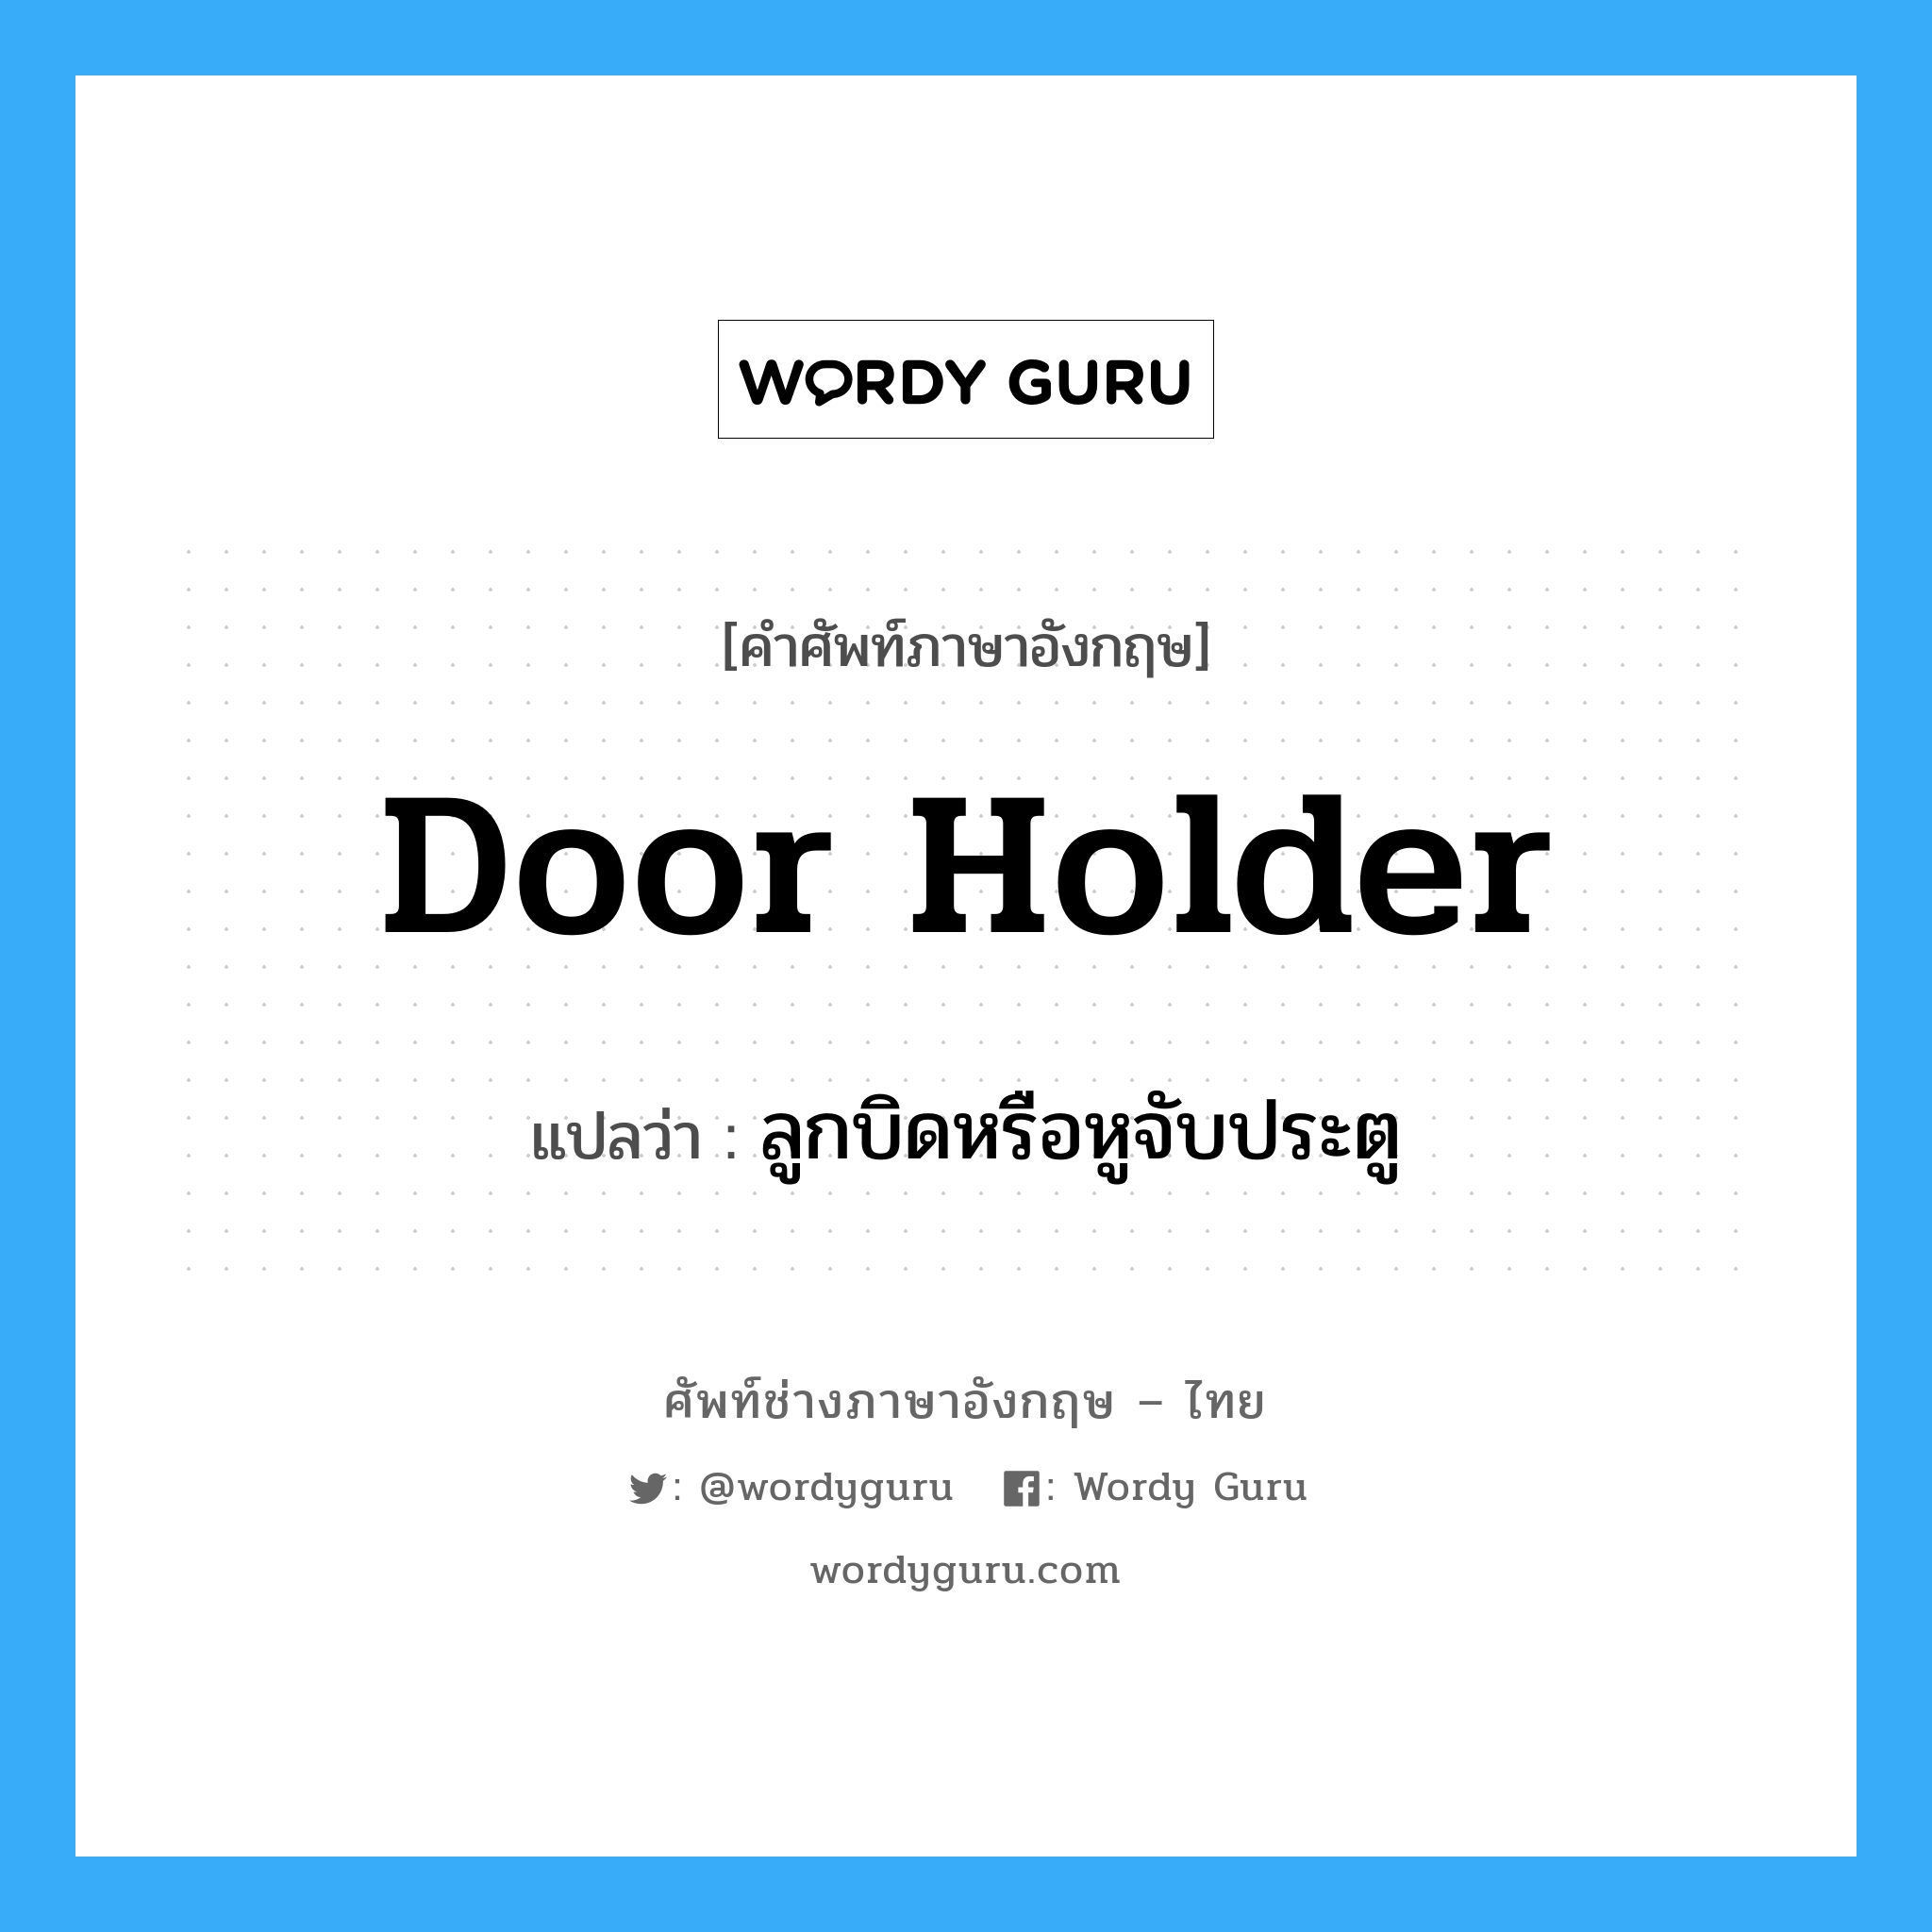 door-holder แปลว่า?, คำศัพท์ช่างภาษาอังกฤษ - ไทย door holder คำศัพท์ภาษาอังกฤษ door holder แปลว่า ลูกบิดหรือหูจับประตู